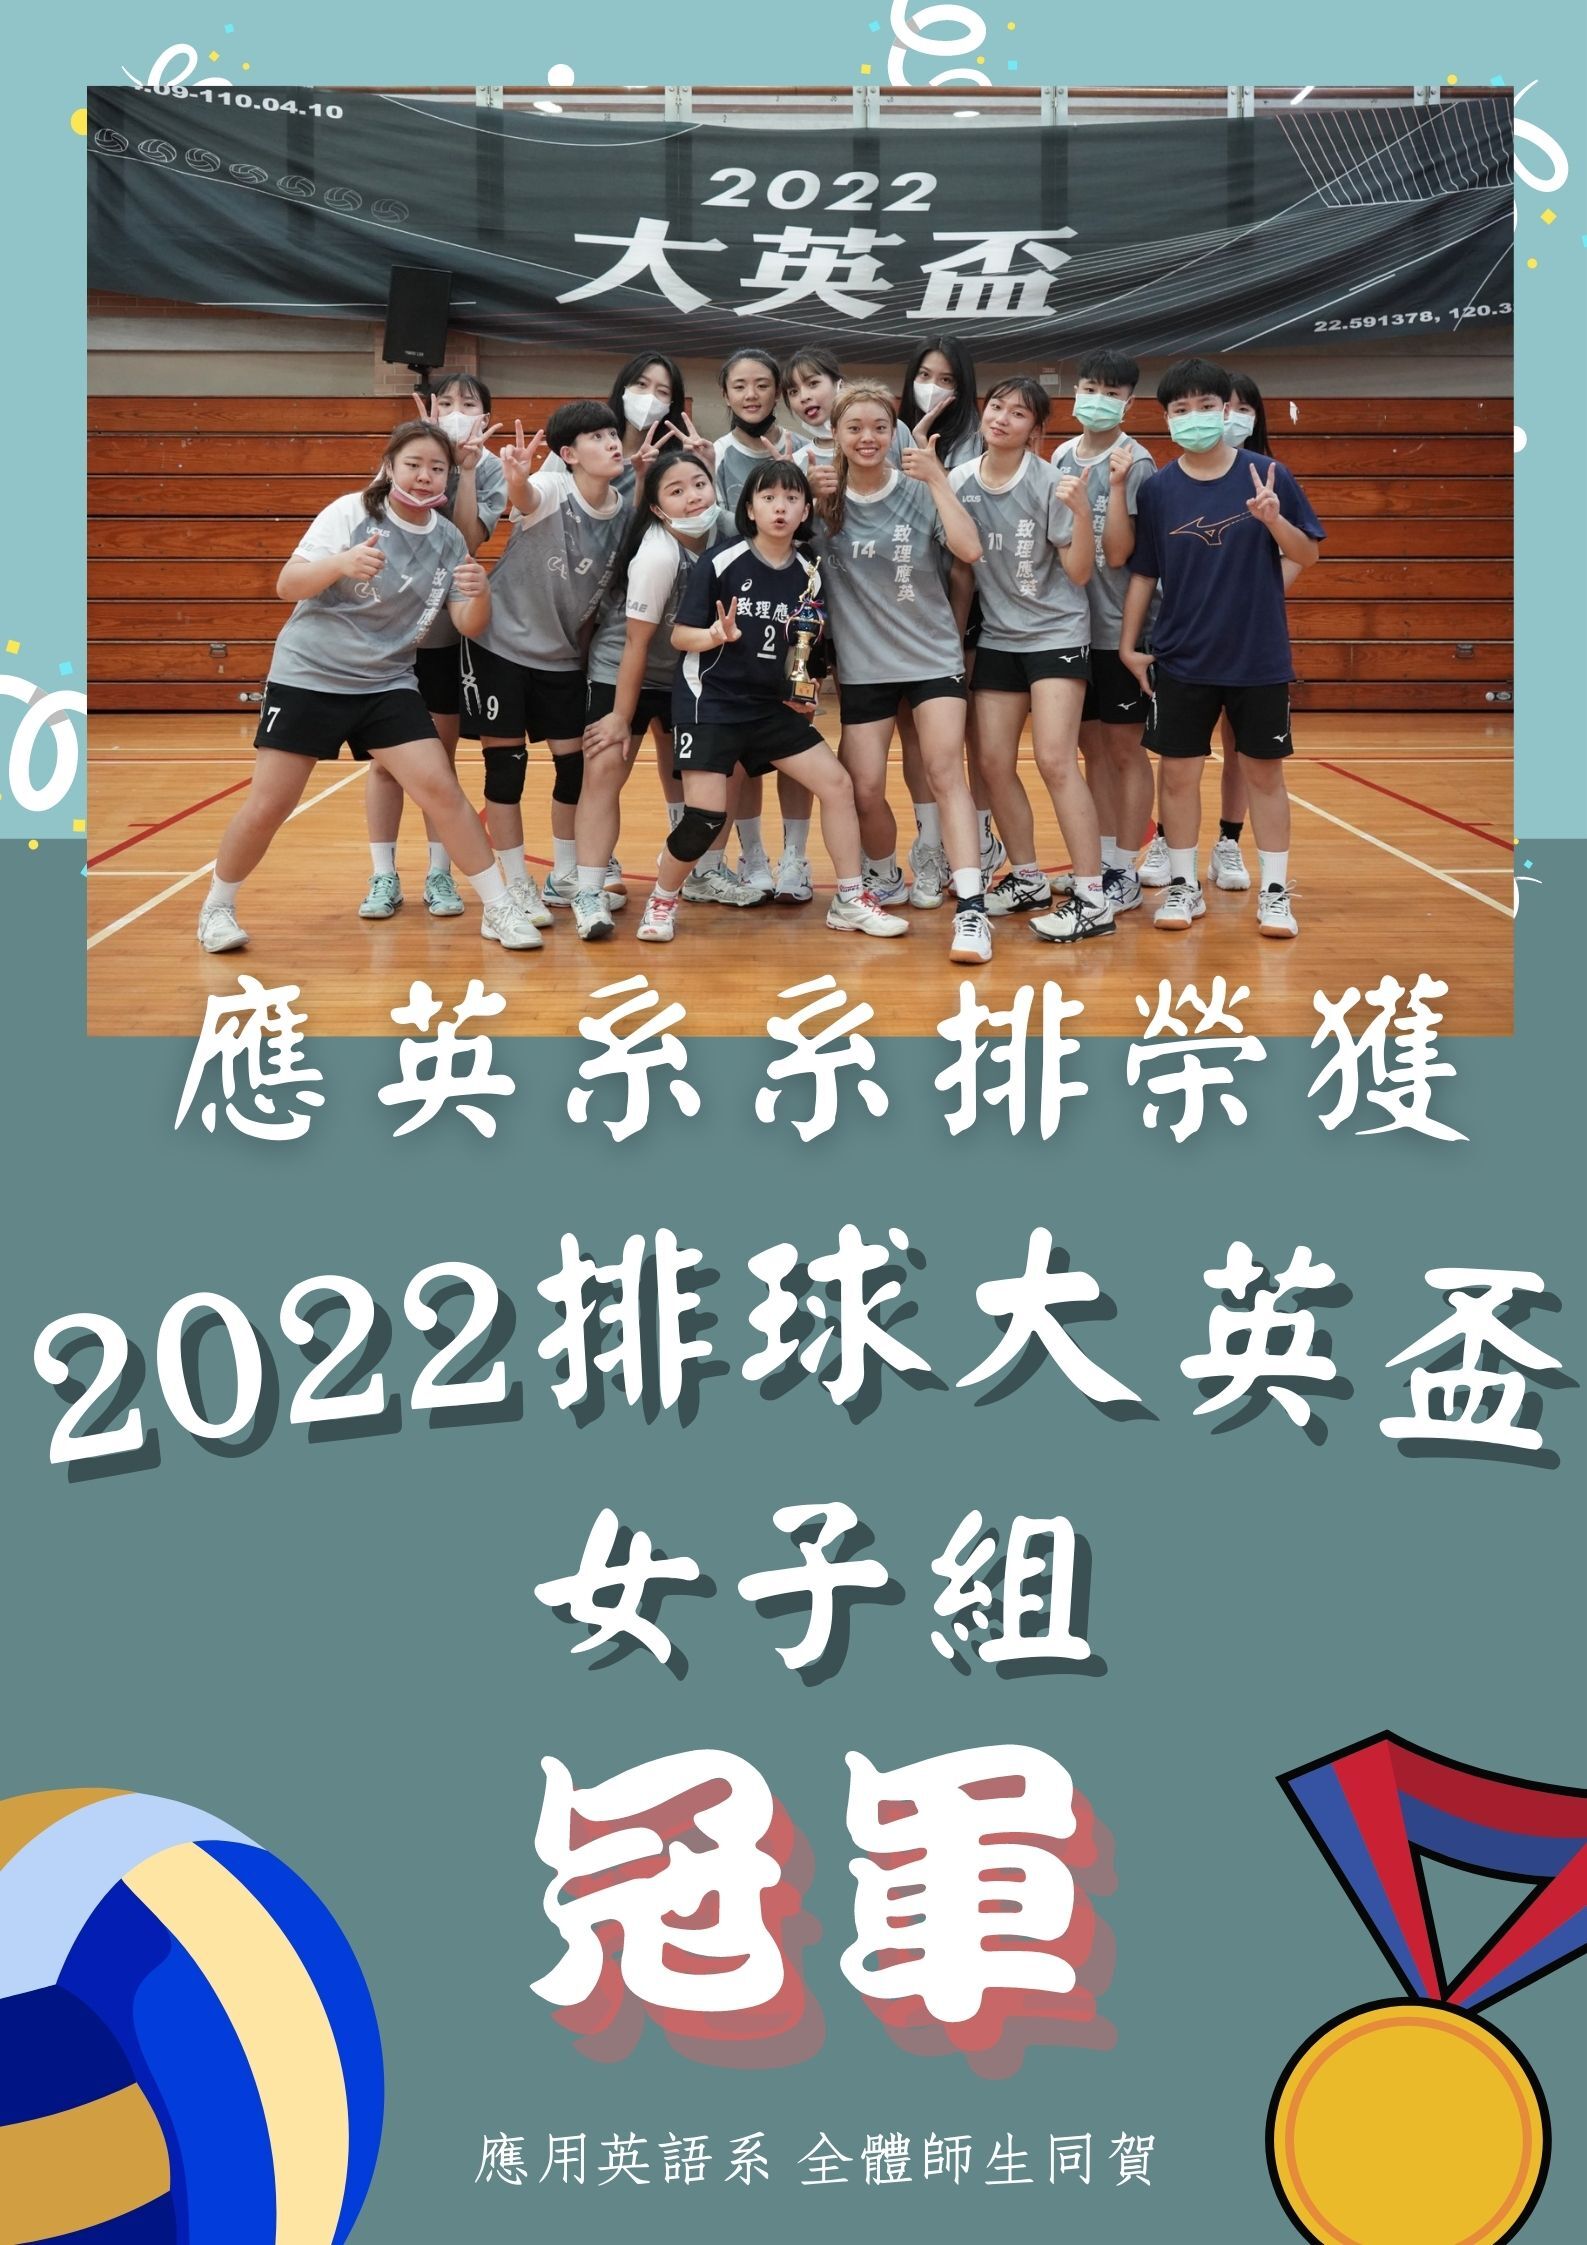 【應用英語系】狂賀~ 應用英語系 榮獲2022大英盃排球賽女子組冠軍